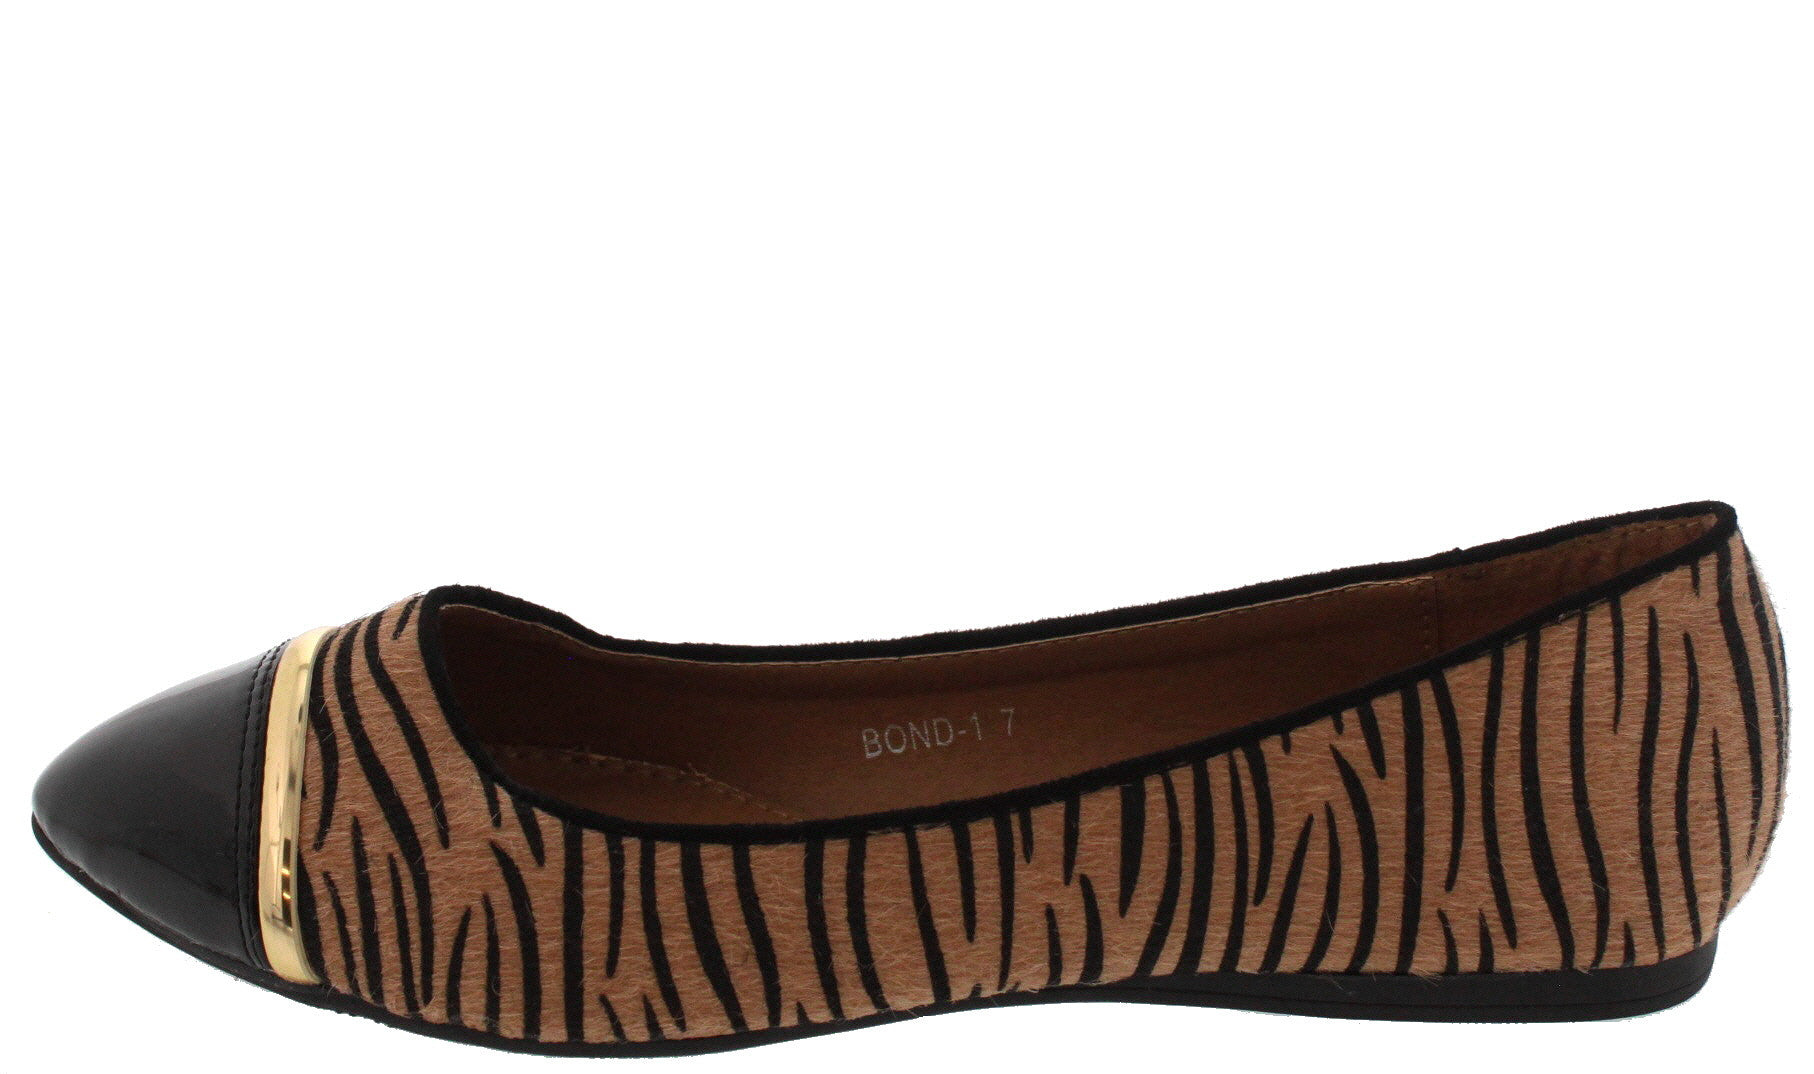 tiger flats shoes